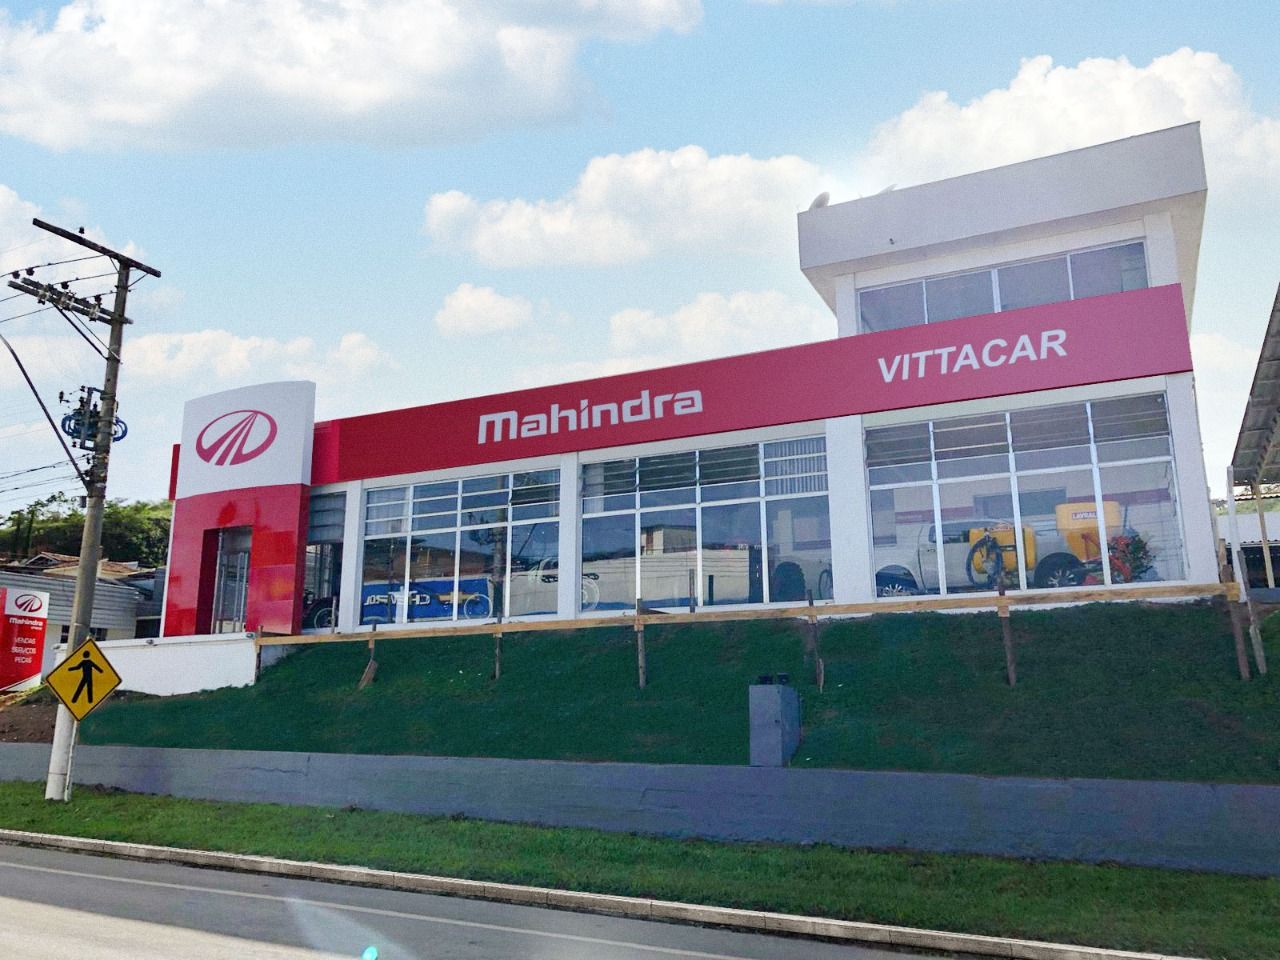 Vittacar Mahindra, localizada em Guaçuí, no estado do Espírito Santo, é o mais novo ponto de venda e assistência técnica autorizado da Mahindra no Brasil. - Foto: Divulgação